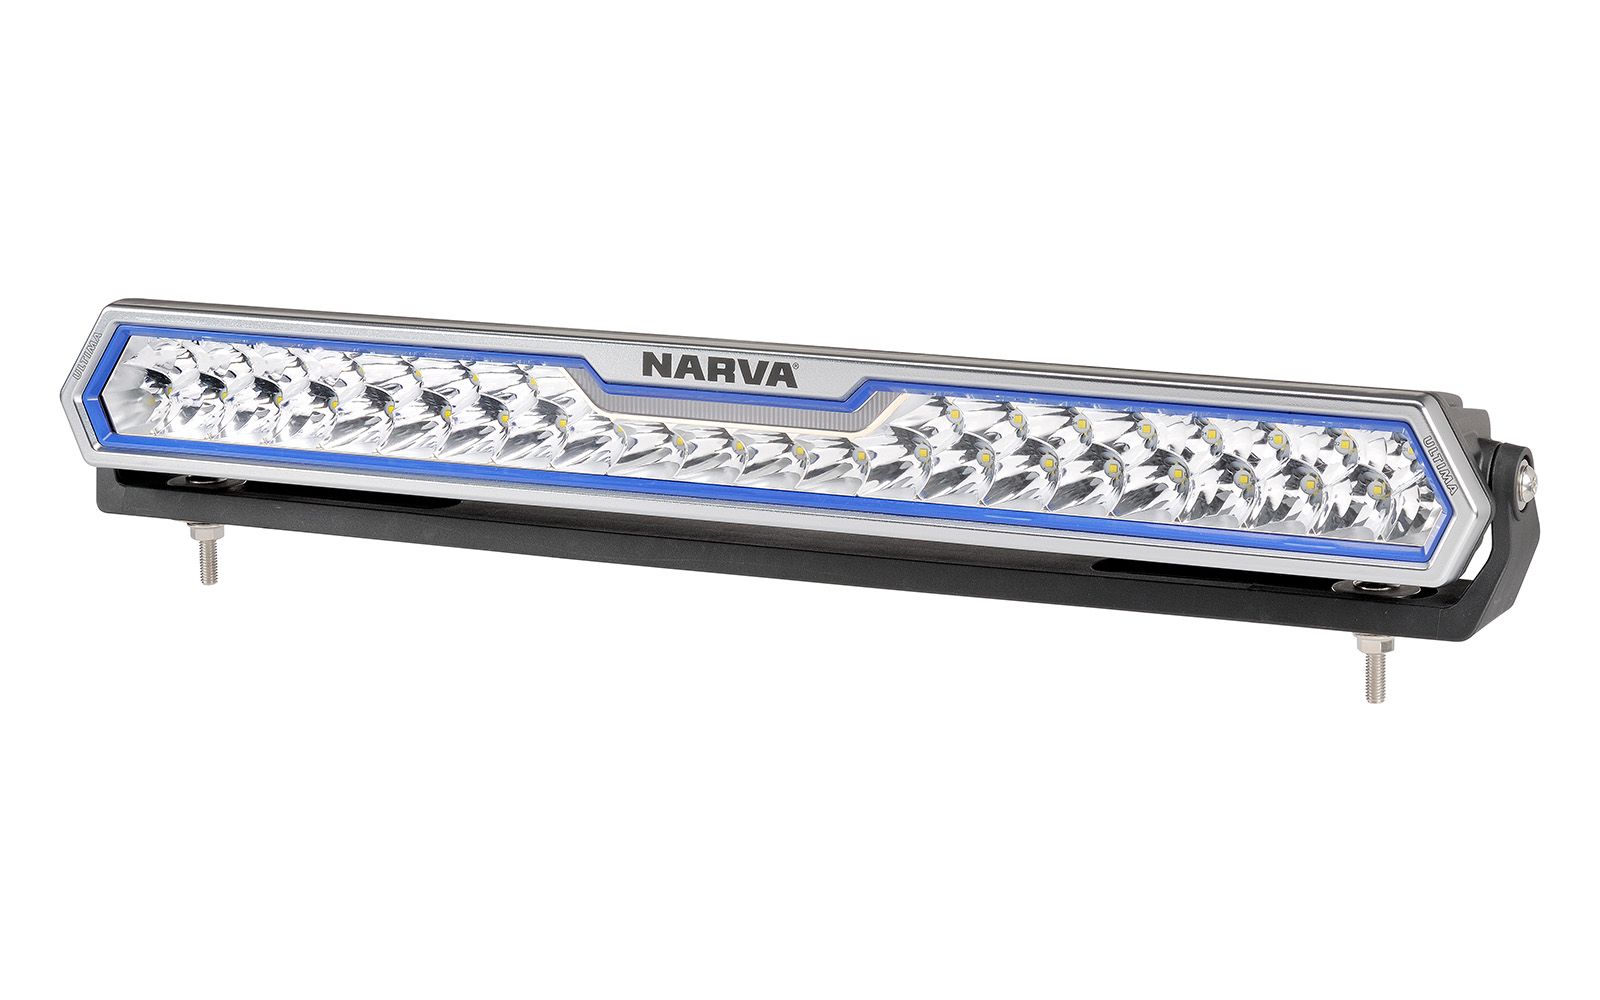 Narva  LED Light Bars